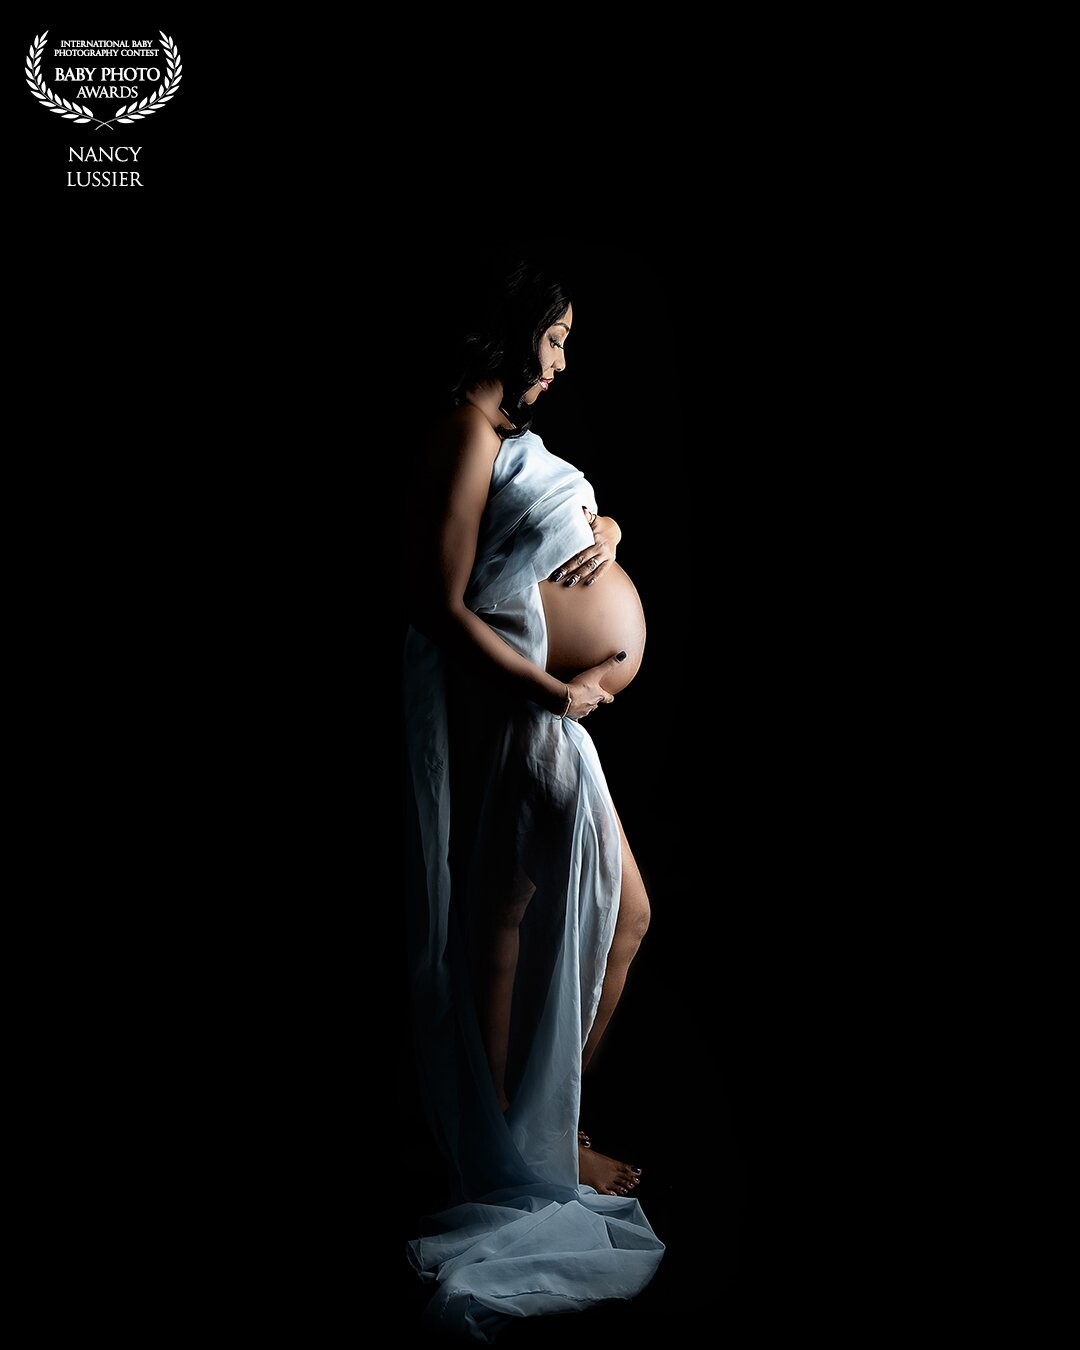 Fait avec Canon R6<br />
F5, 1/200 Iso 100<br />
Cette maman était magnifique, et j'ai pu immortaliser son beau bébé par la suite....<br />
J'aime bien faire ce style de photo, qui reflète la nature de la maman enceinte .